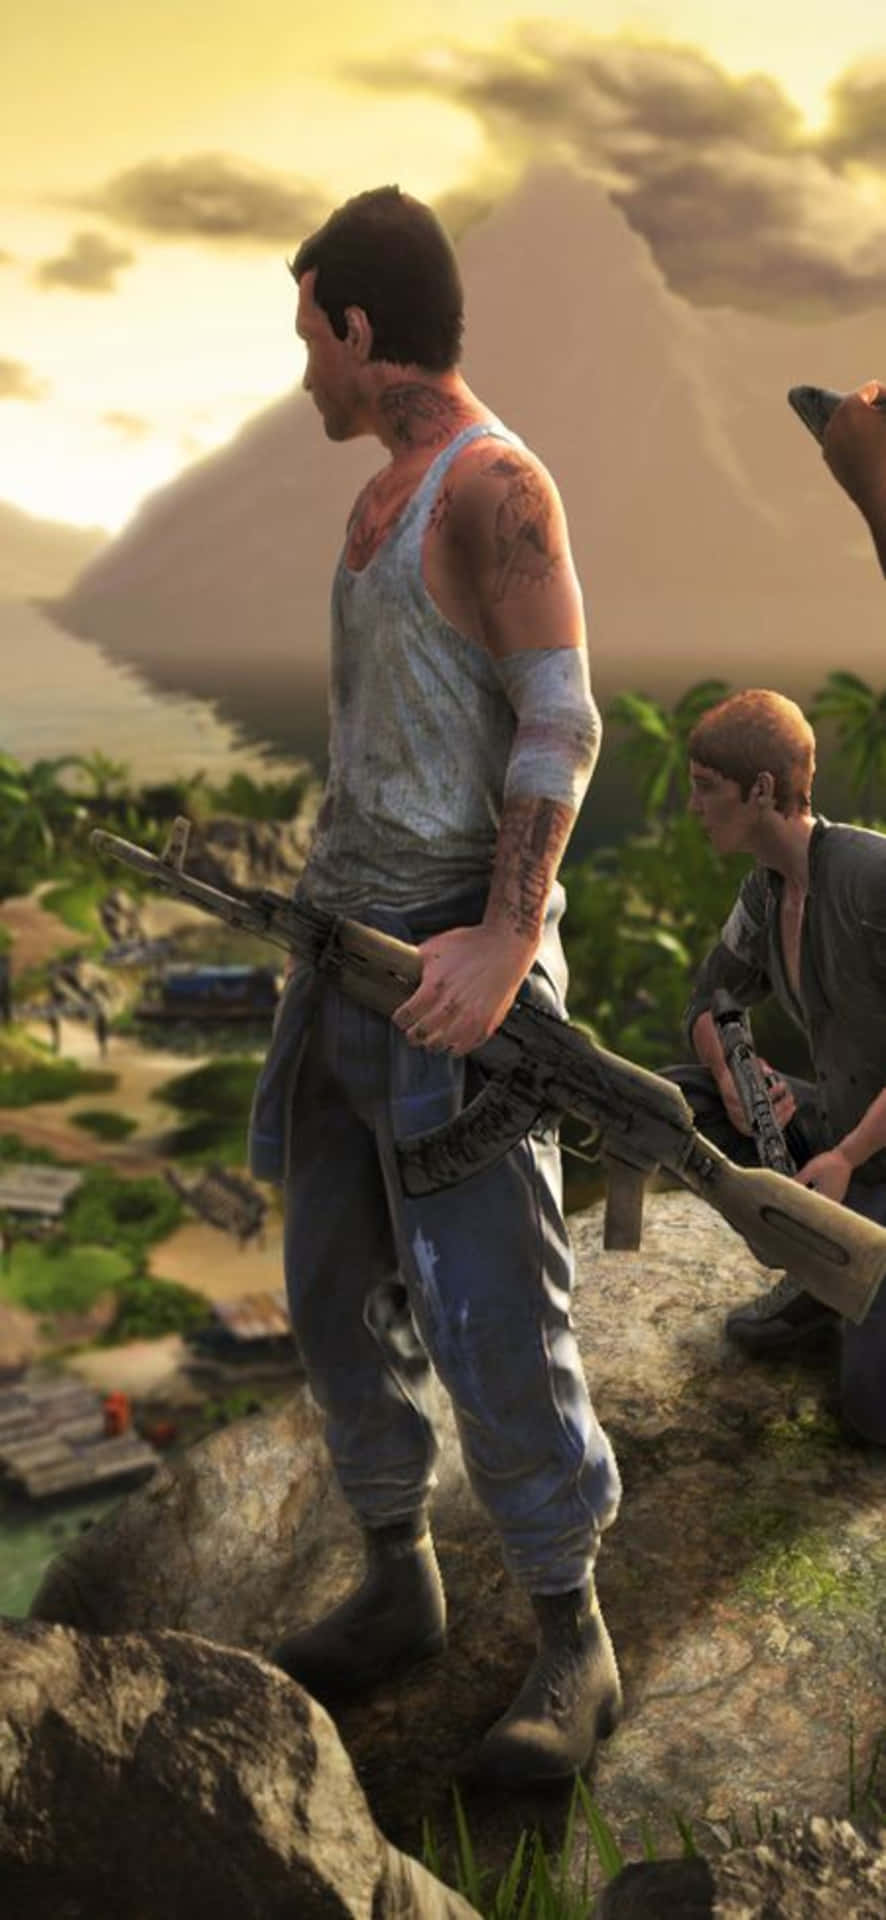 Fondode Pantalla De Personaje Desaliñado De Far Cry 3 Para Iphone X.